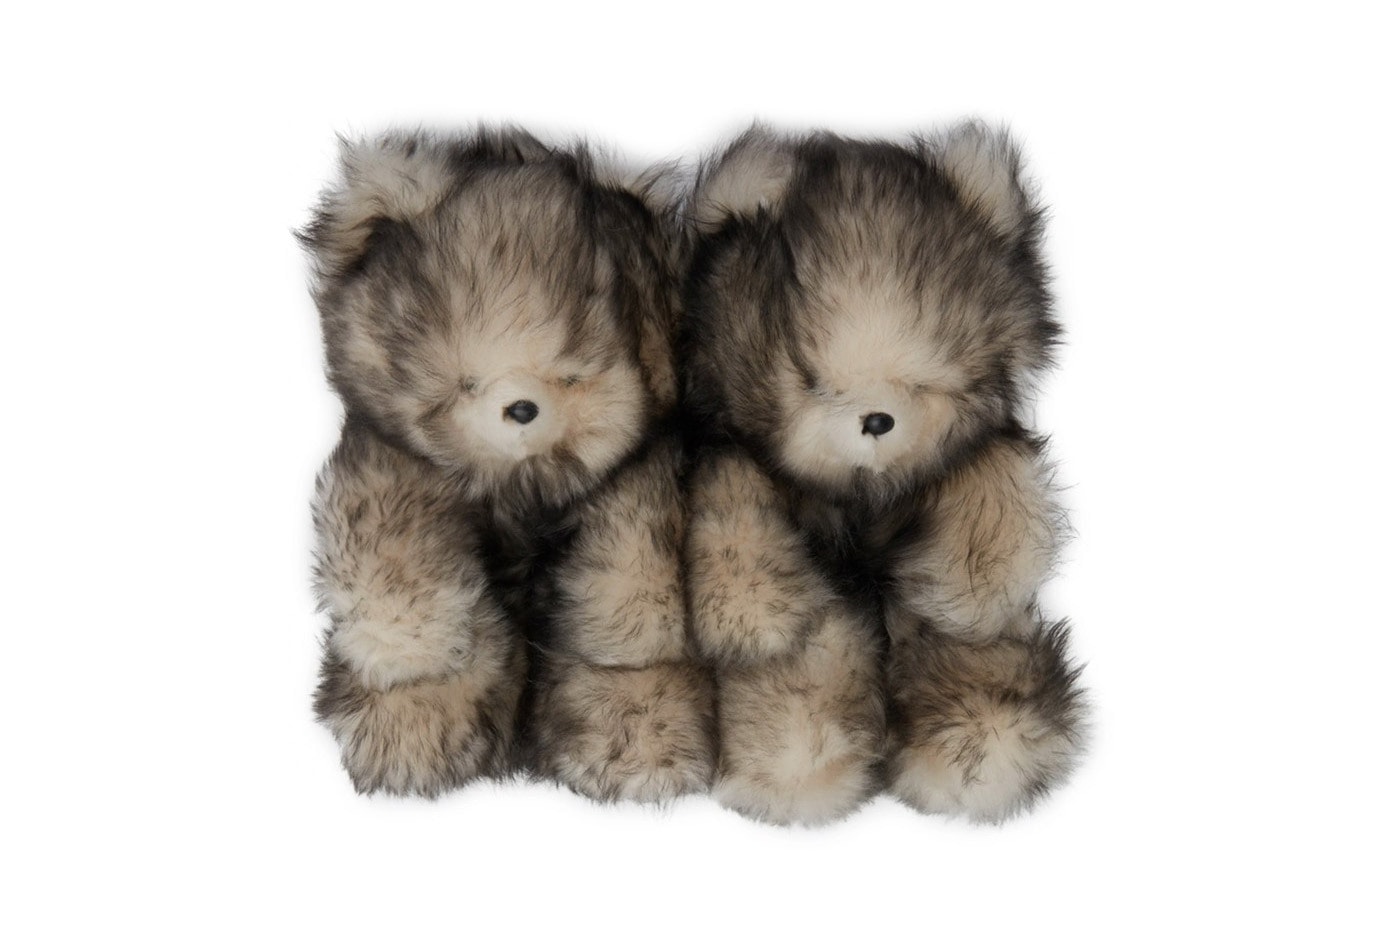 베트멍, 곰 인형 모양의 슬리퍼 'Hug Me Bear' 출시, 테디 베어, 벹멍, 벹망, 베트망, 에센스, 편집숍